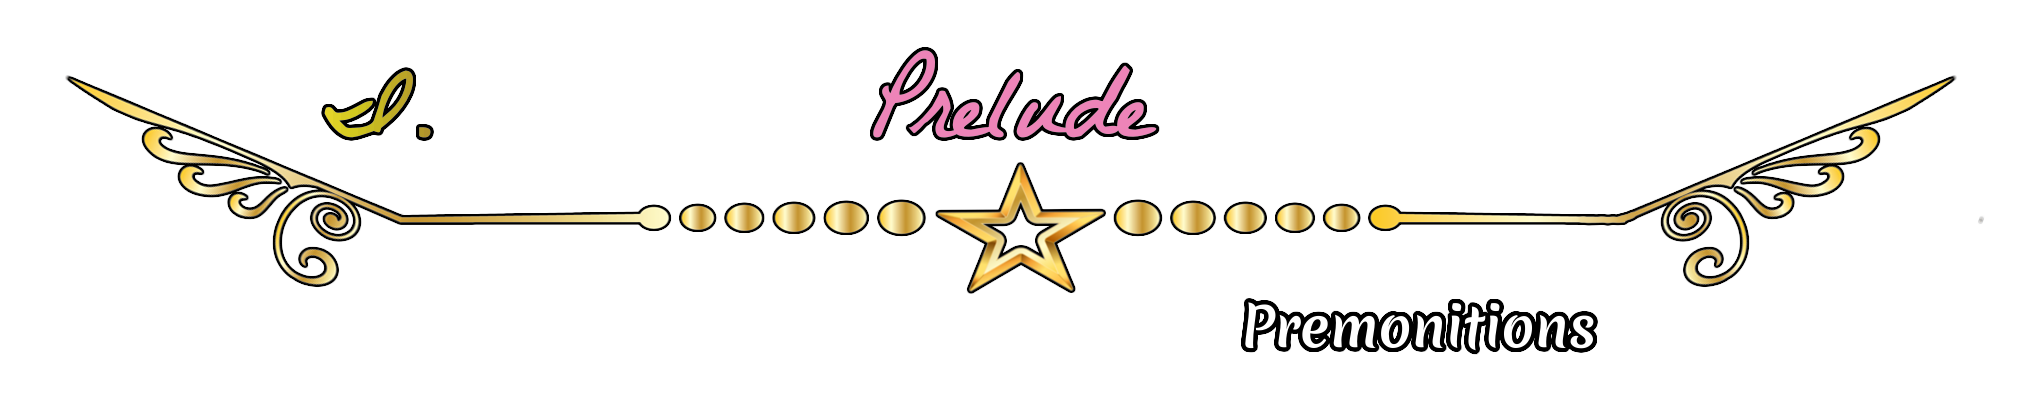 Prelude - Premonitions